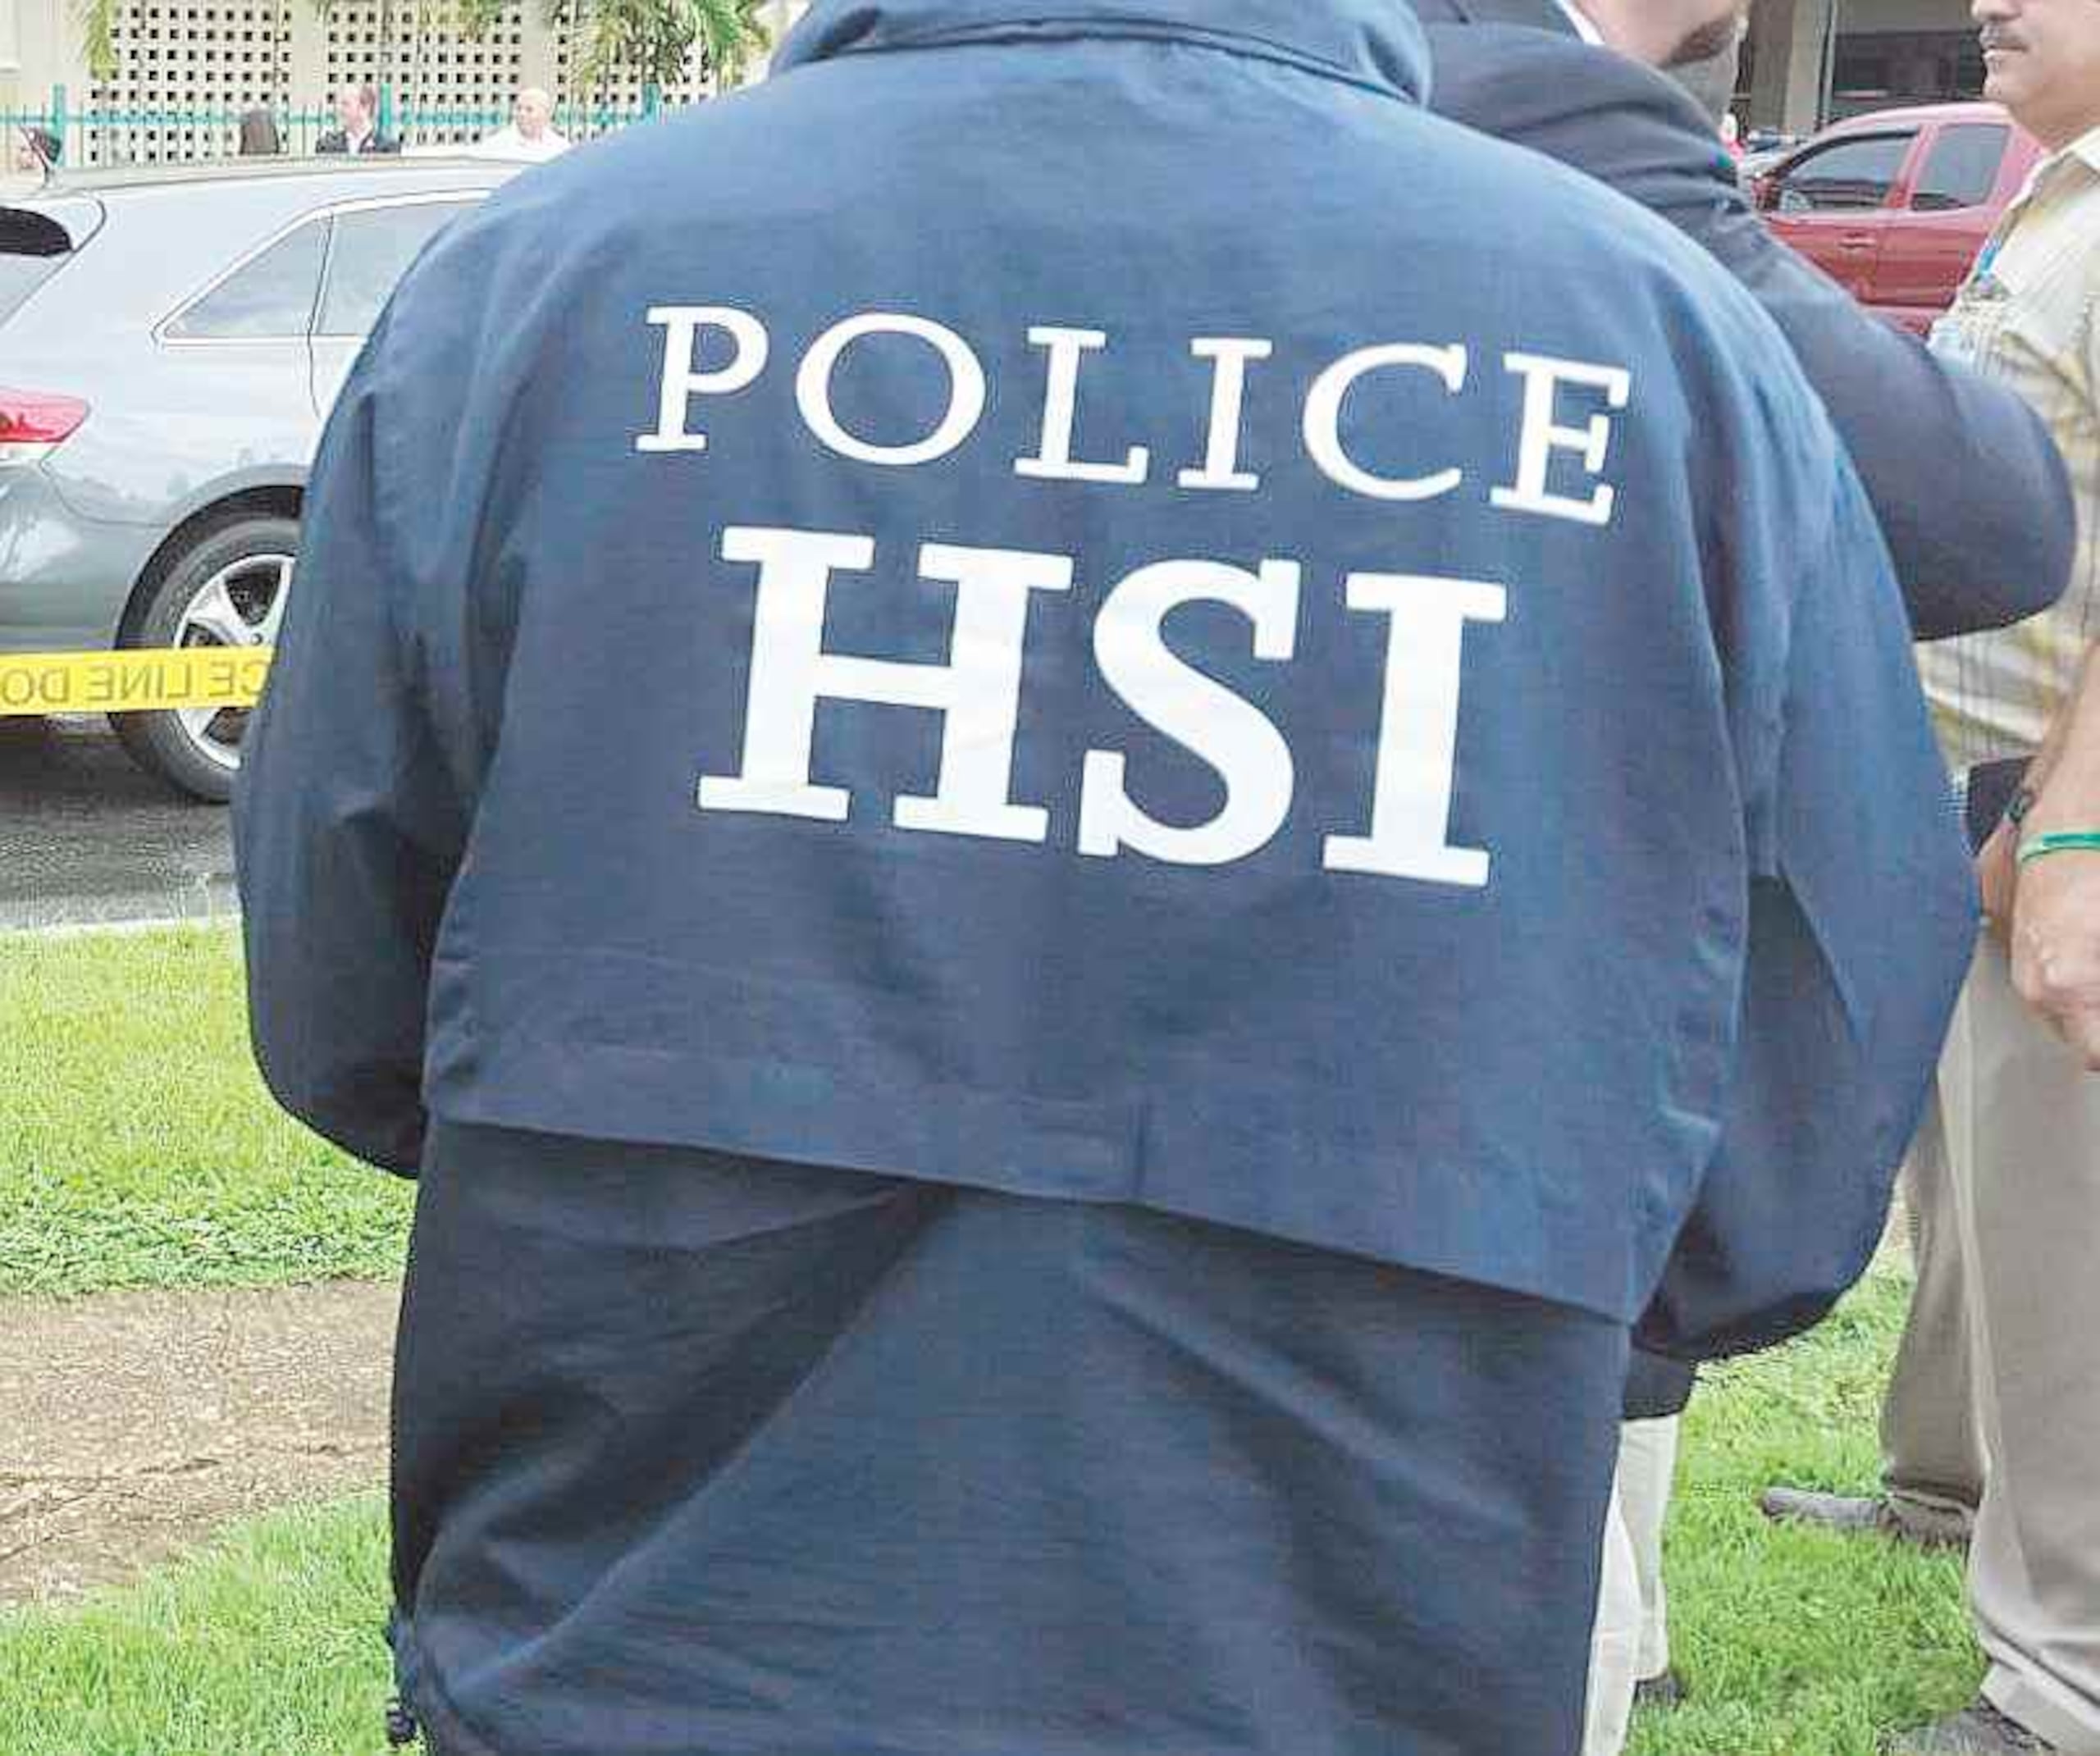 El operativo está encabezado por agentes especiales de la Oficina de Investigaciones de Seguridad Interna del Servicio de Inmigración y Control de Aduanas en Mayaguez (ICE-HSI), agencia que lidera la investigación. (Archivo / GFR Media)